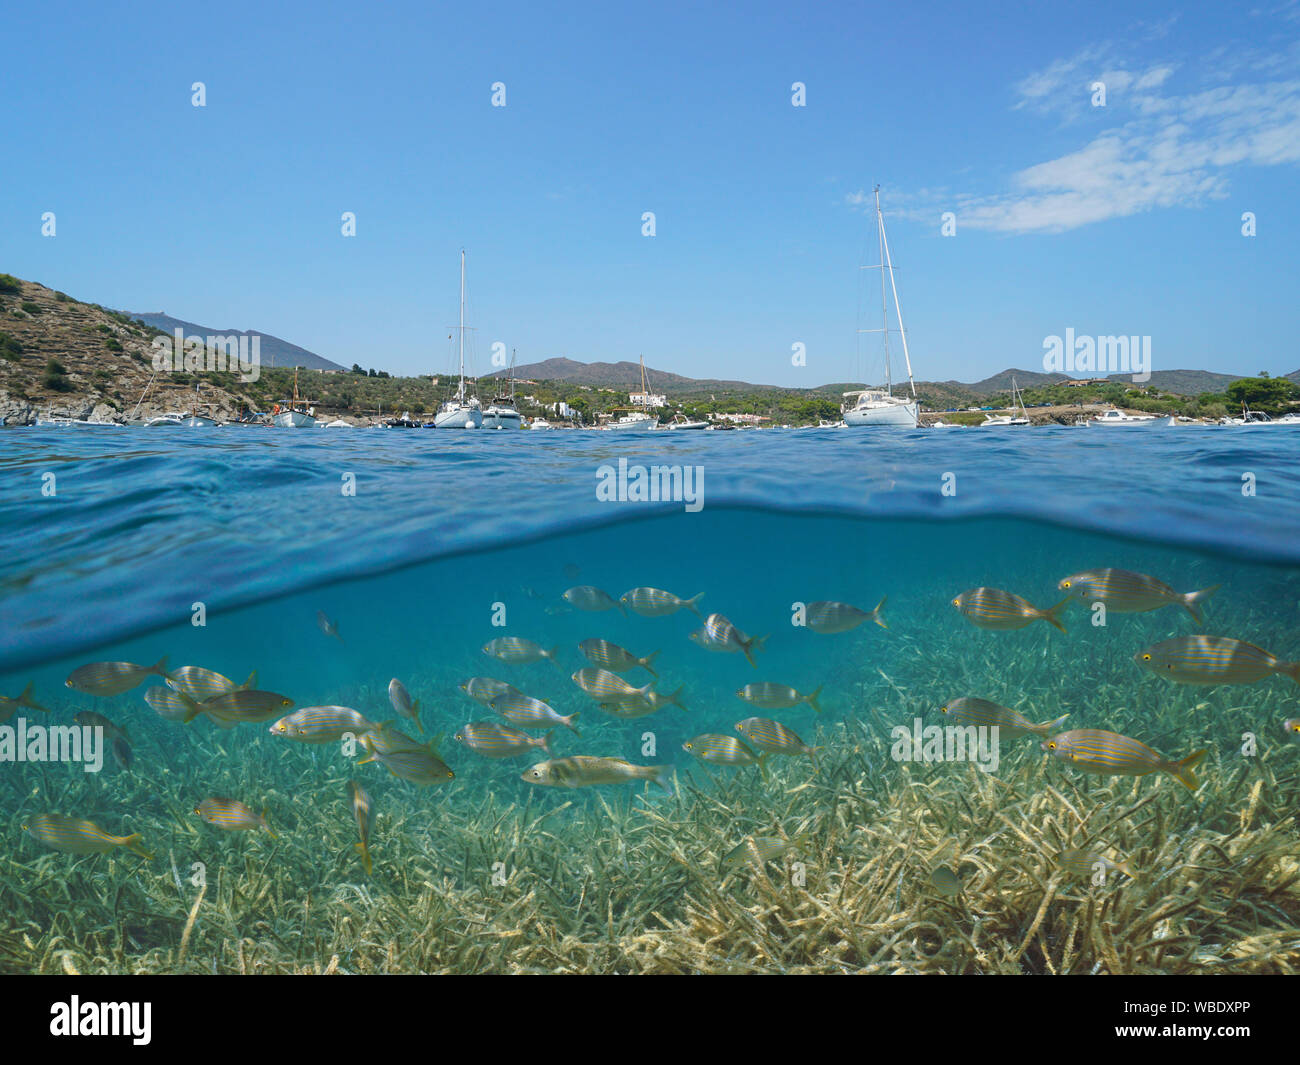 Spanien Costa Brava Cadaques, Boote in der Bucht von Portlligat günstig mit Fisch und Seegras Unterwasser, Mittelmeer, geteilte Ansicht oberhalb und unterhalb der Oberfläche Stockfoto